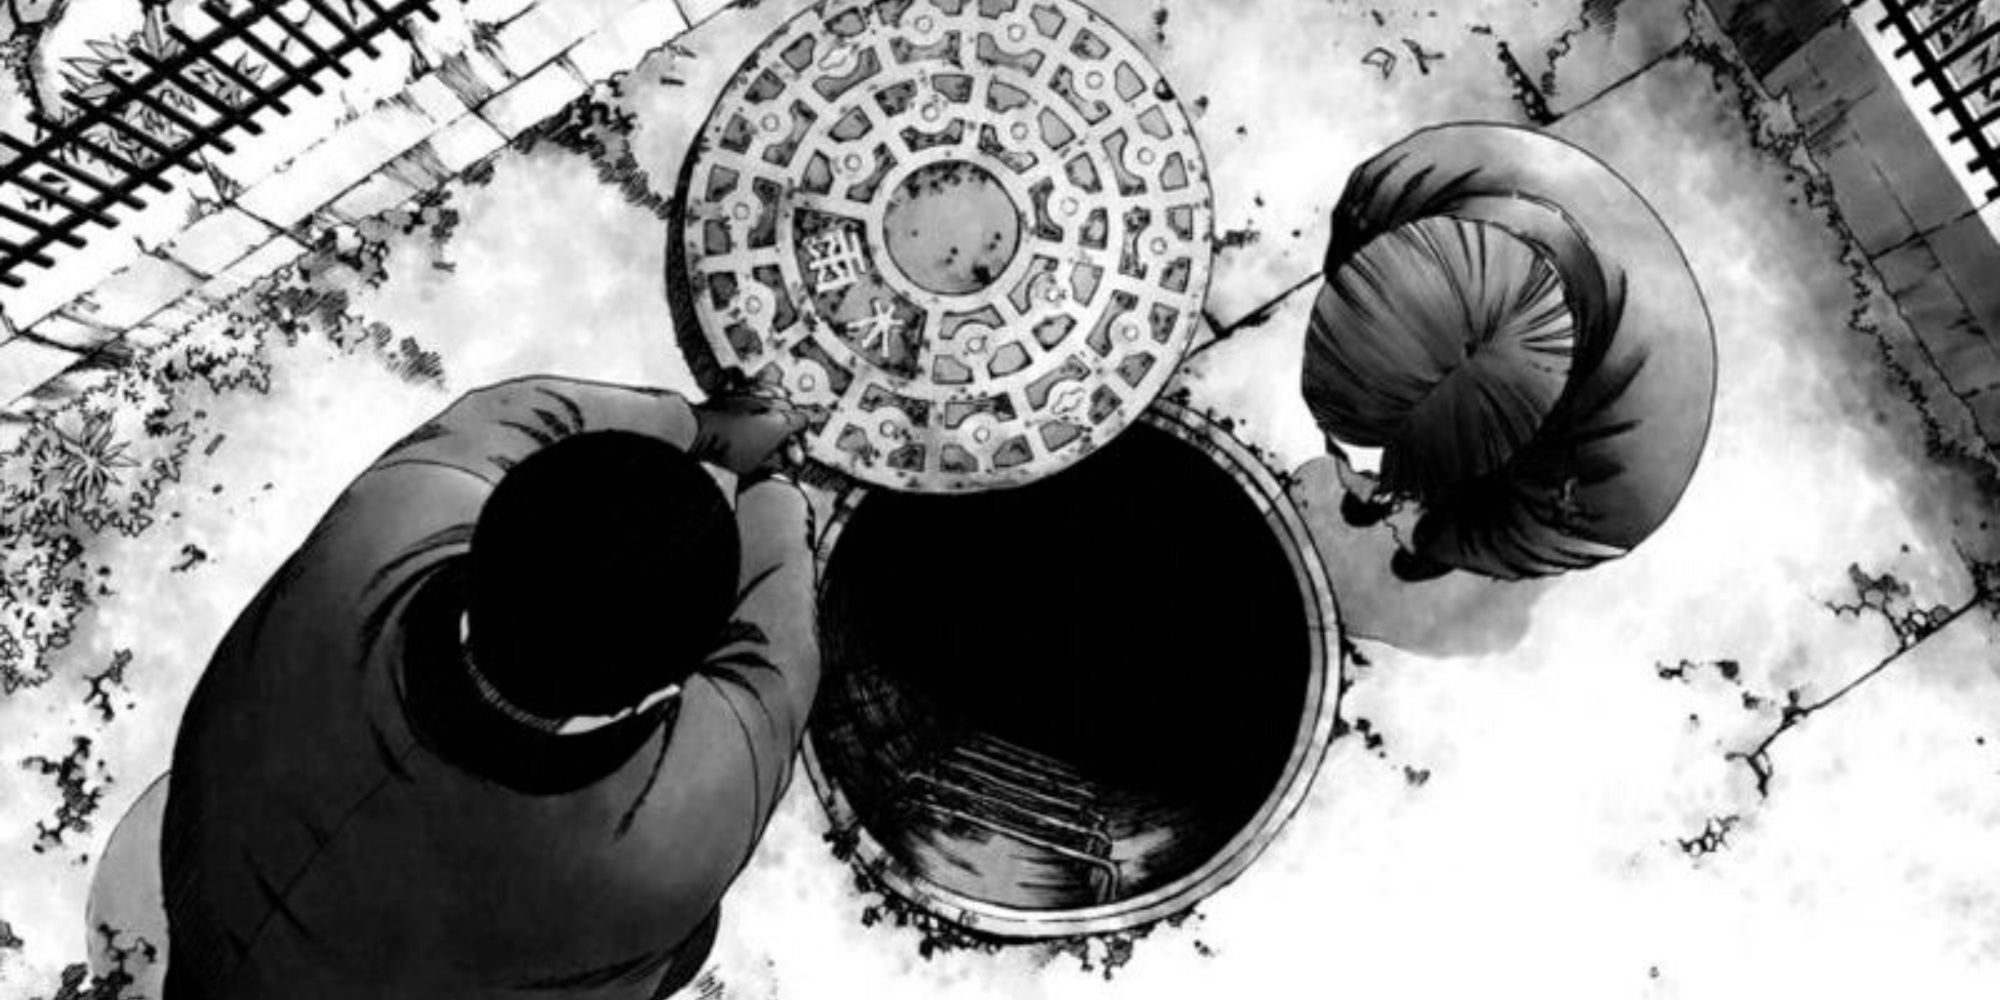 Inoui and Mizoguchi in Manhole by Tetsuya Tsutsui